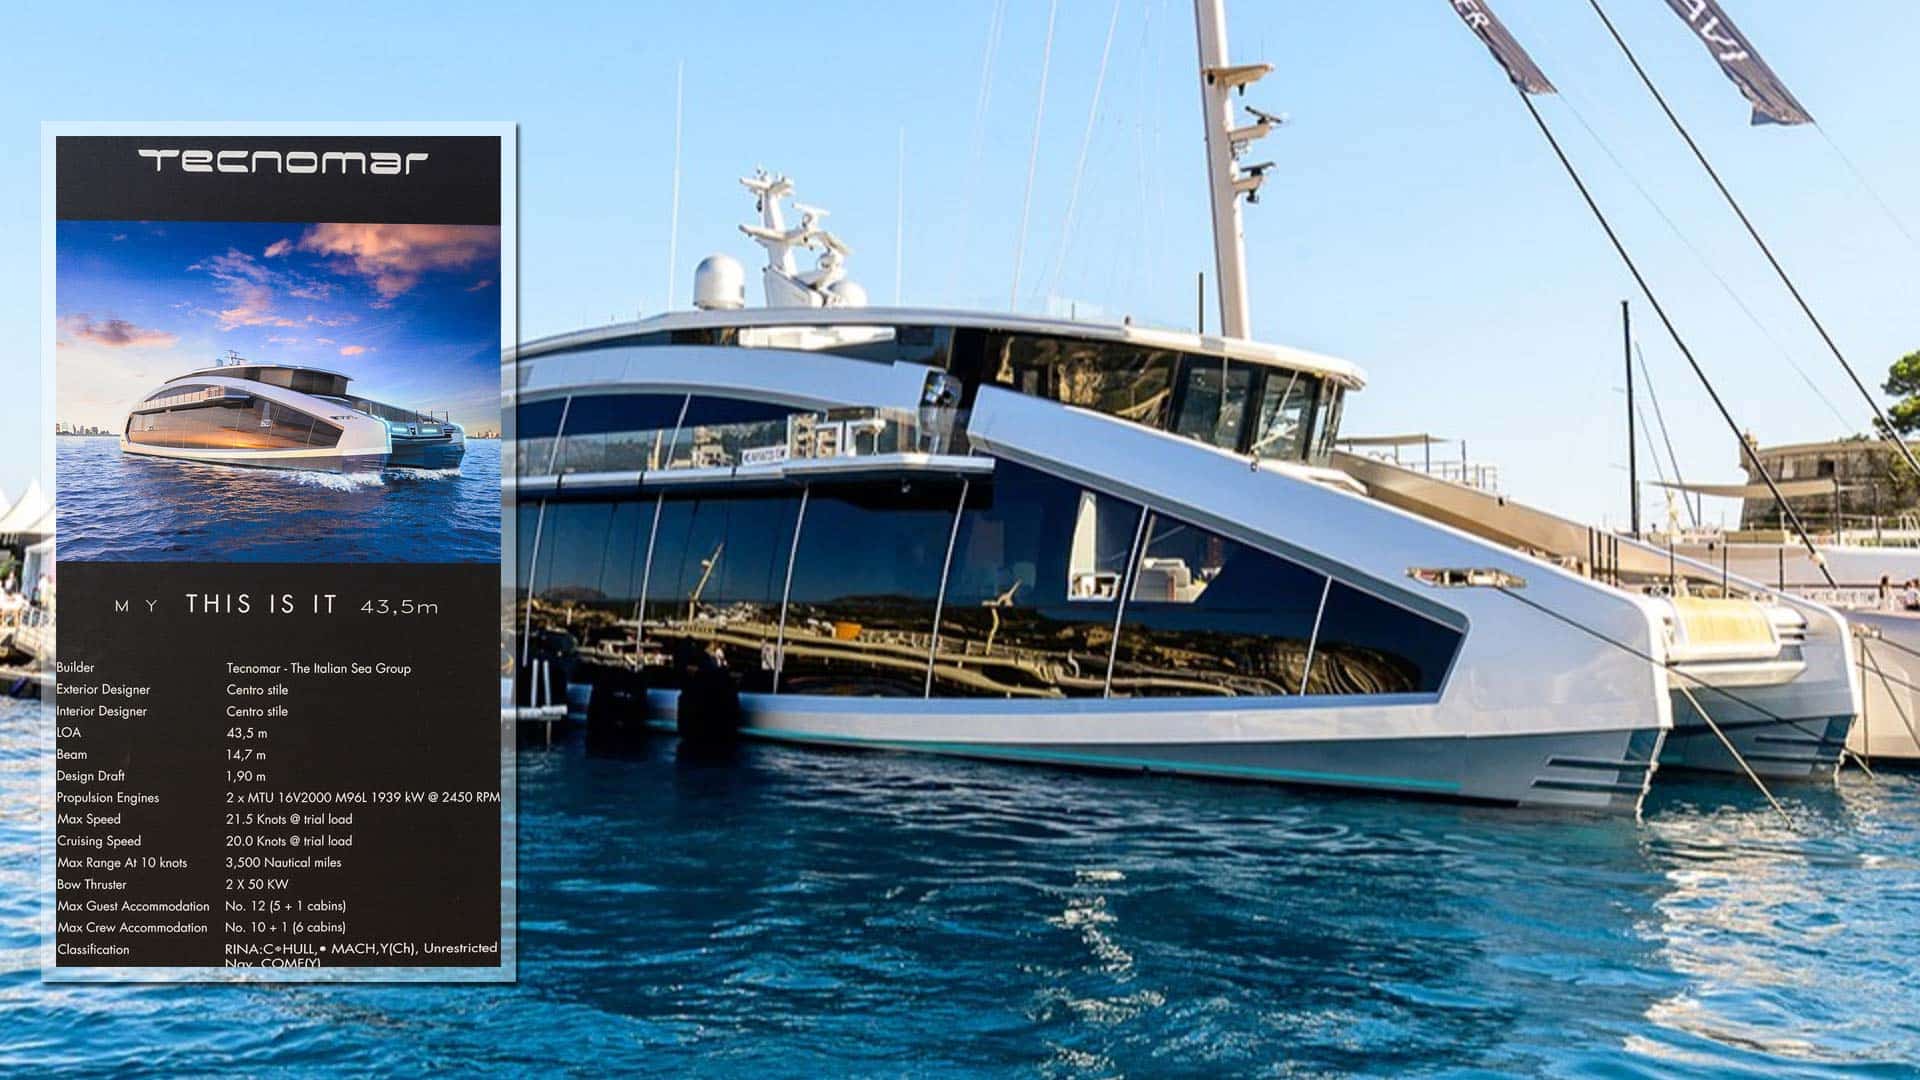 This is Ιt: Το φουτουριστικό γιοτ εντυπωσίασε στο Yacht Show του Μονακό